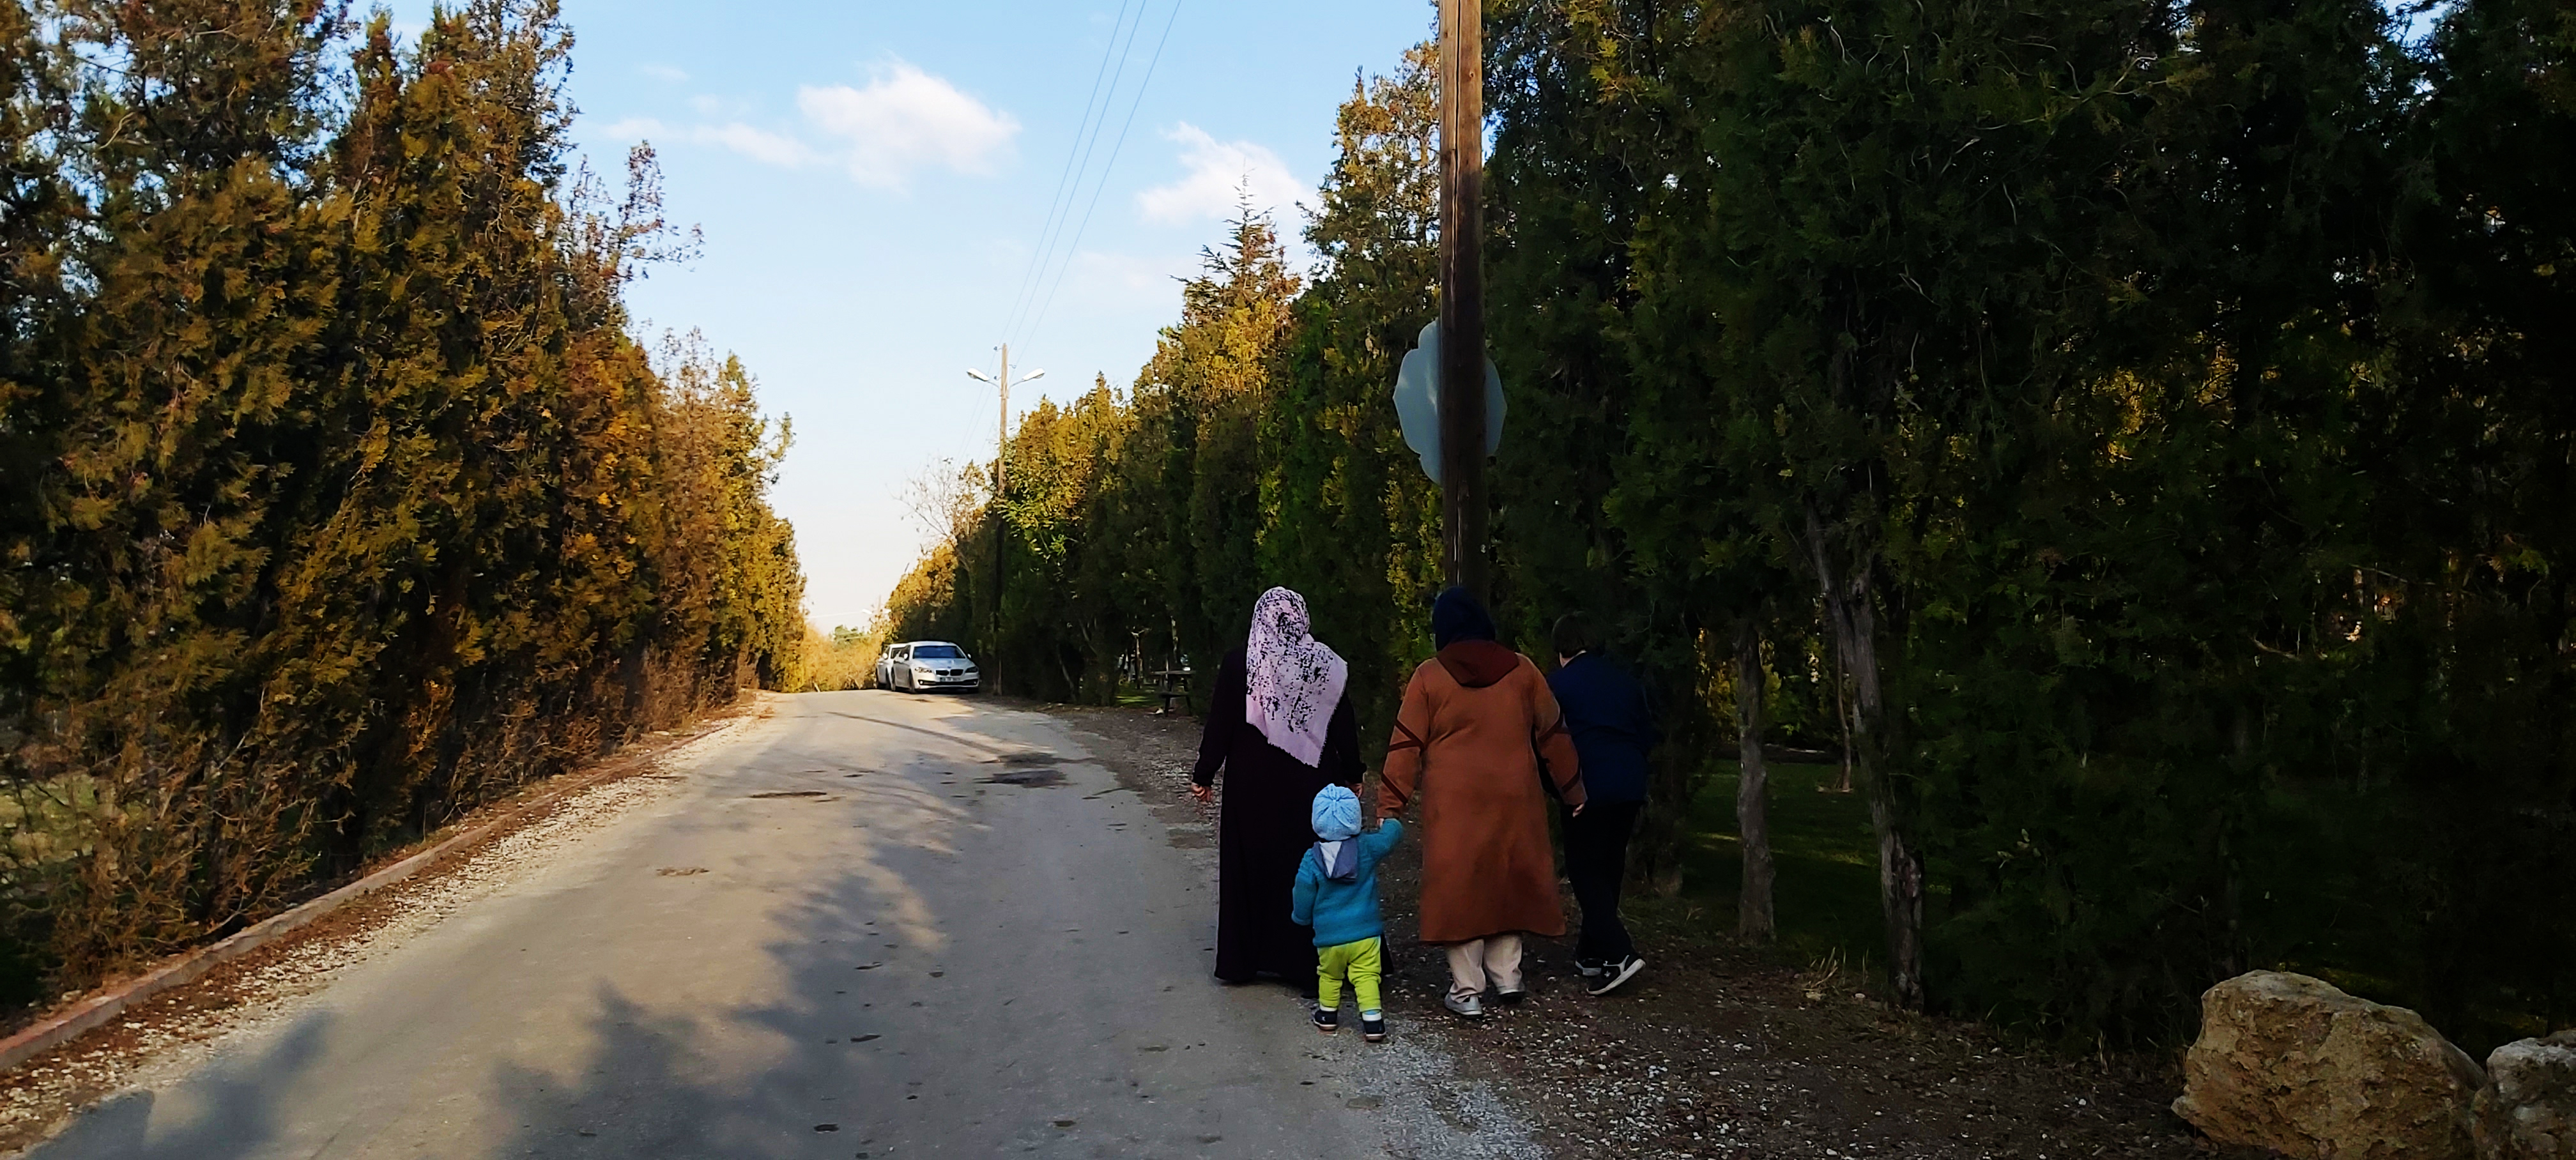 Konyalılar, kış ortasında güneşin tadını Meram Bağları’nda çıkartıyor 51